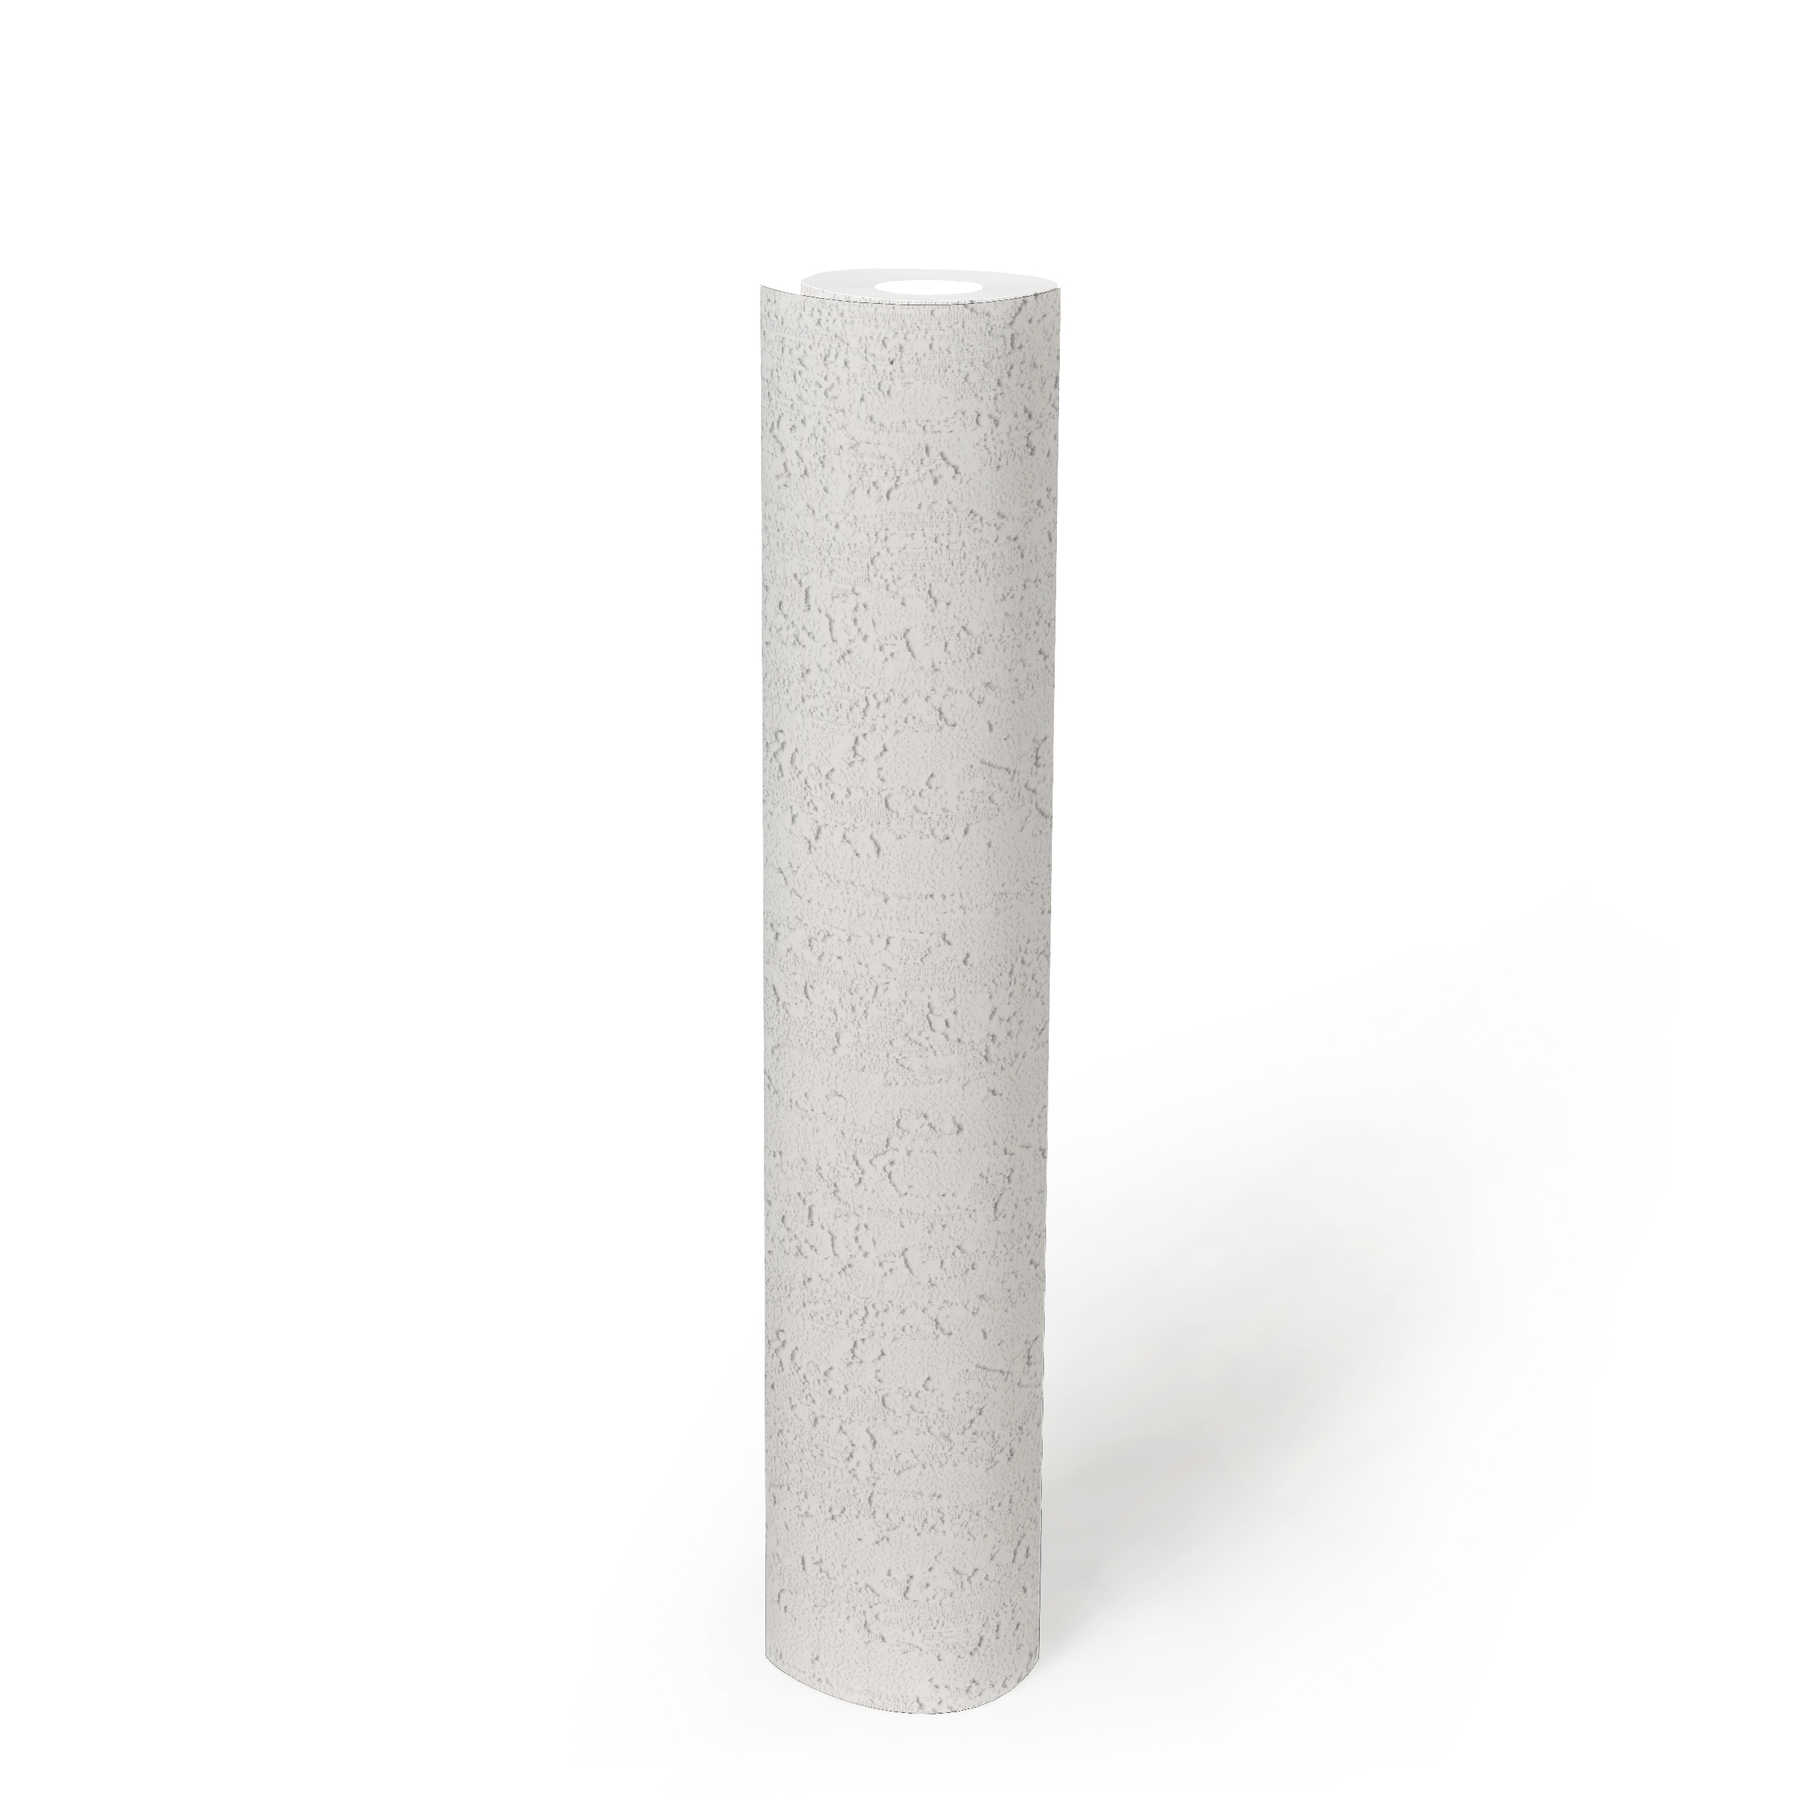             Papel pintado blanco con estructura de aspecto de yeso rugoso - blanco
        